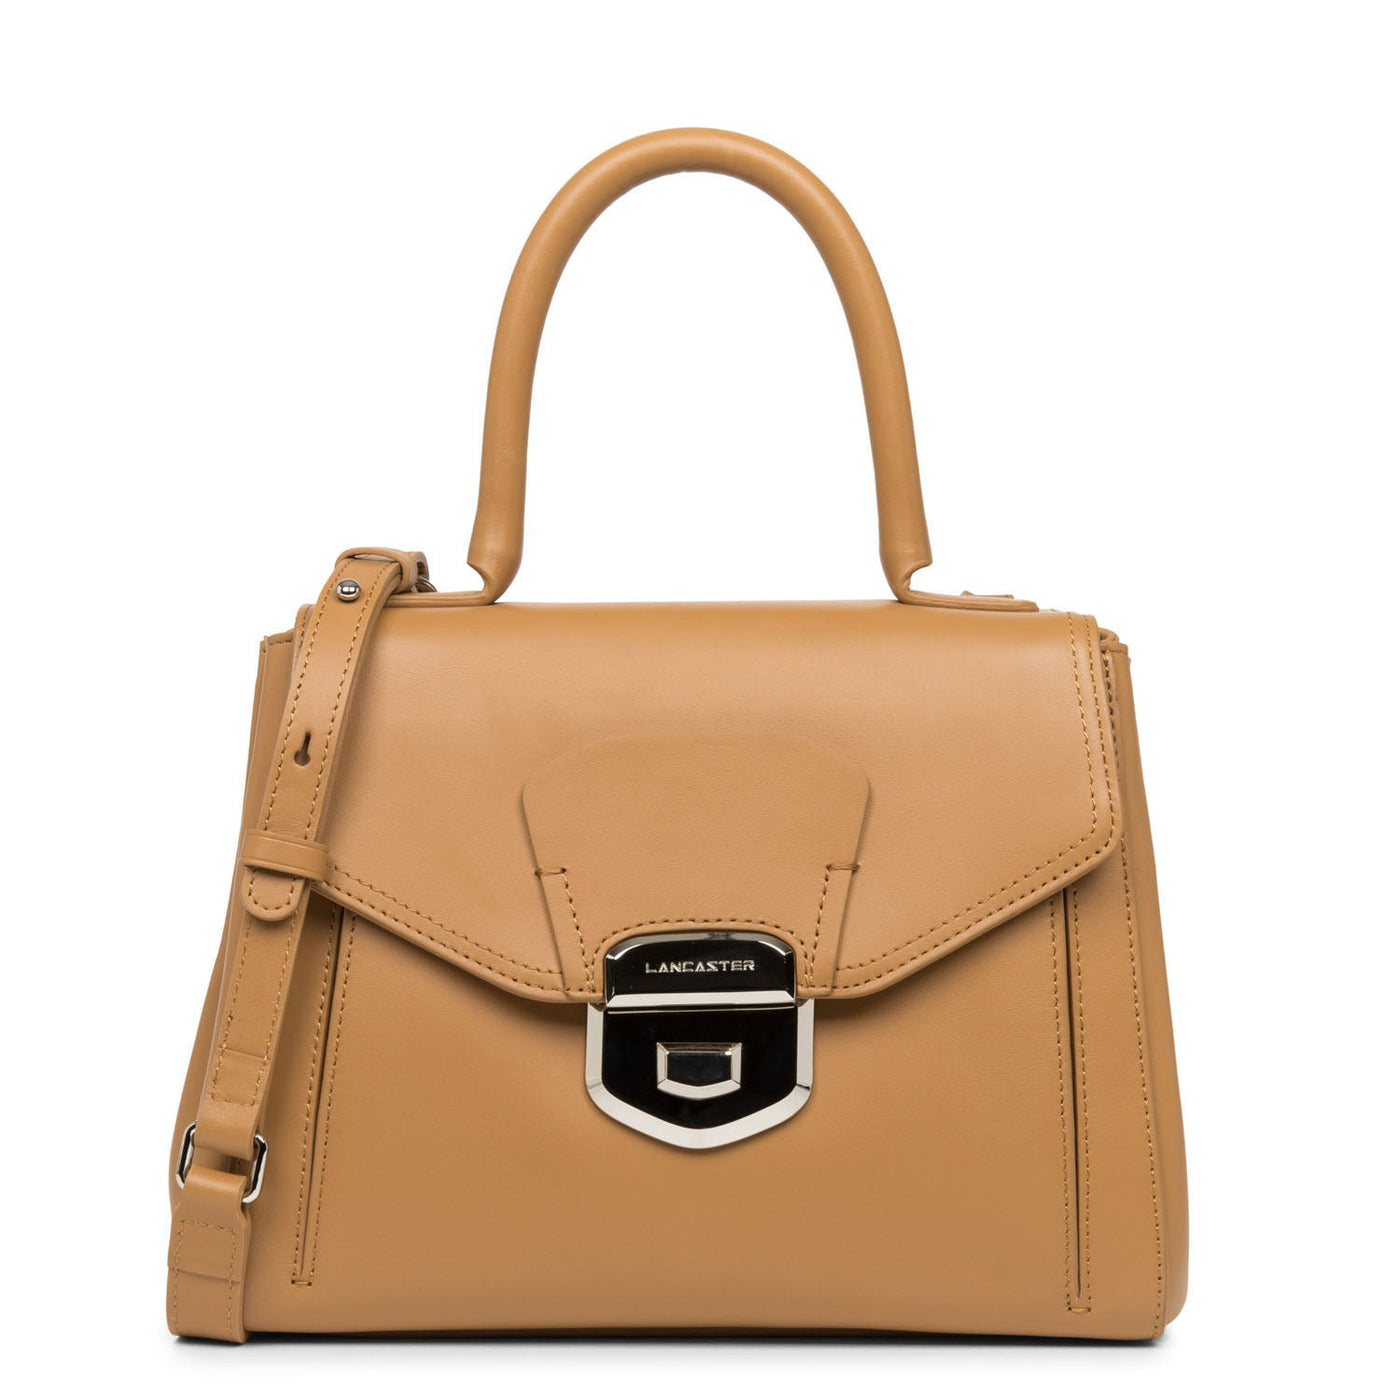 handbag - parisienne sophia #couleur_sable